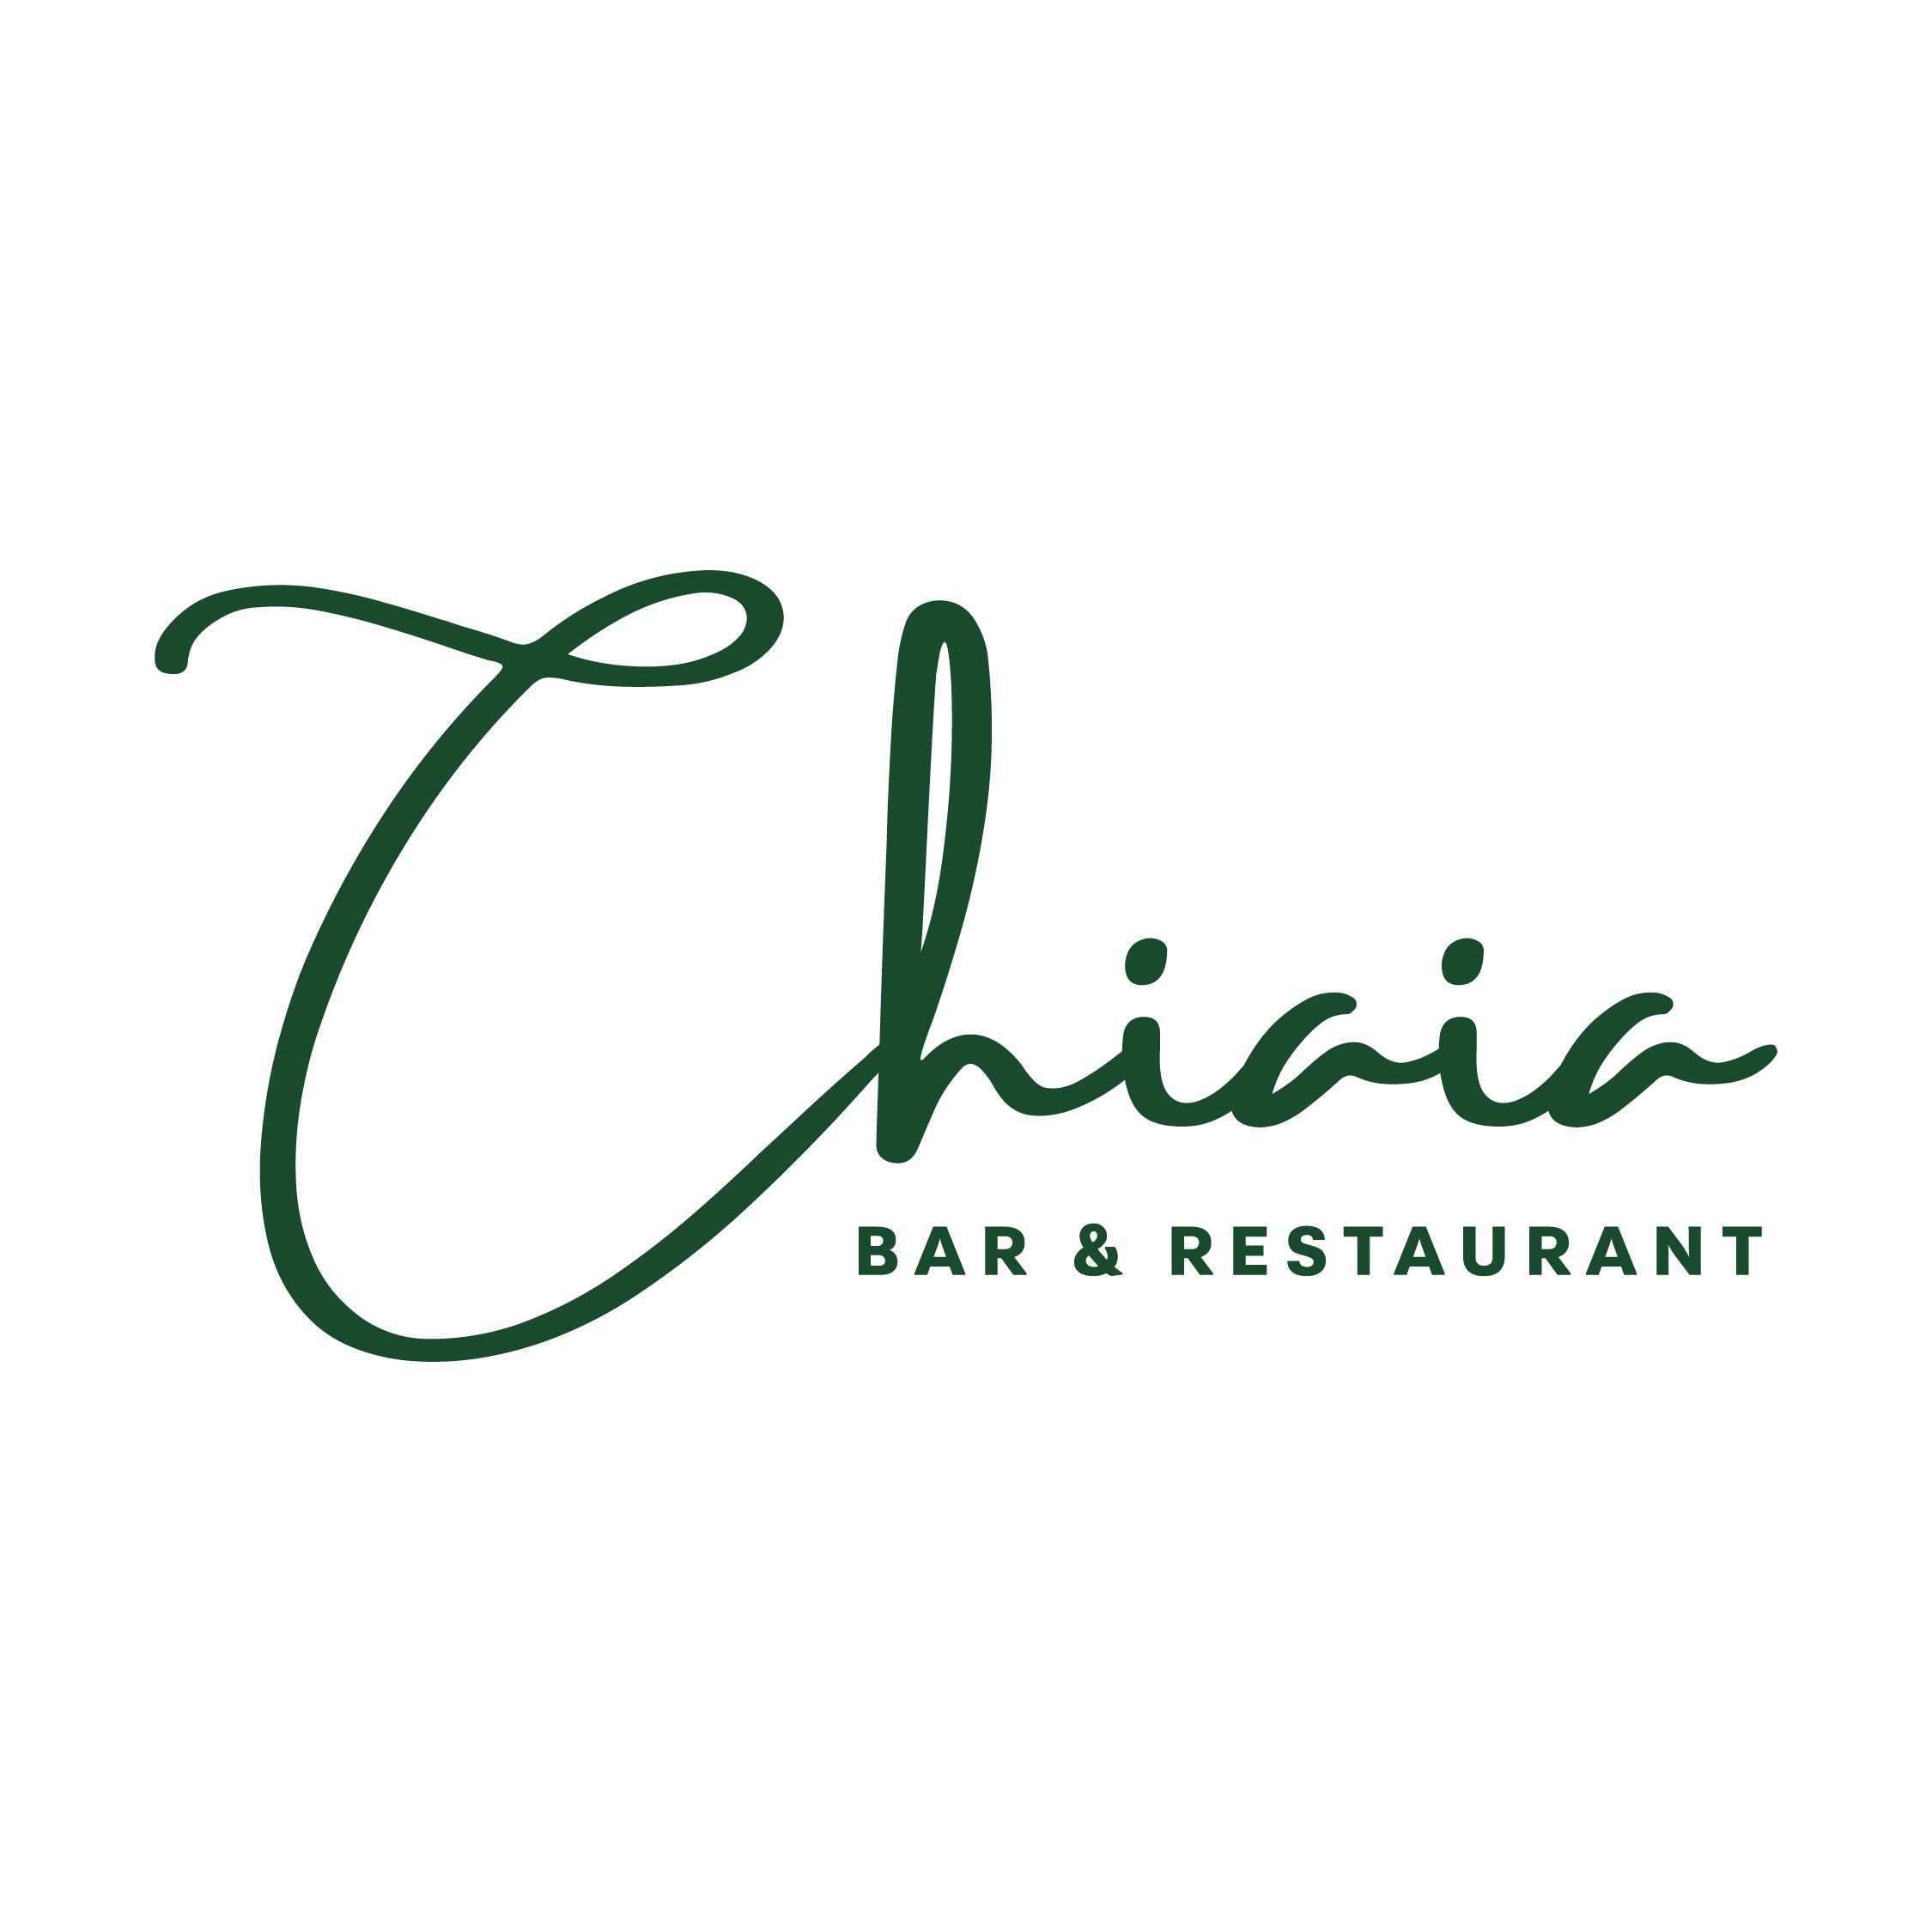 Chiaia Bar und Restaurant in Kerpen im Rheinland - Logo